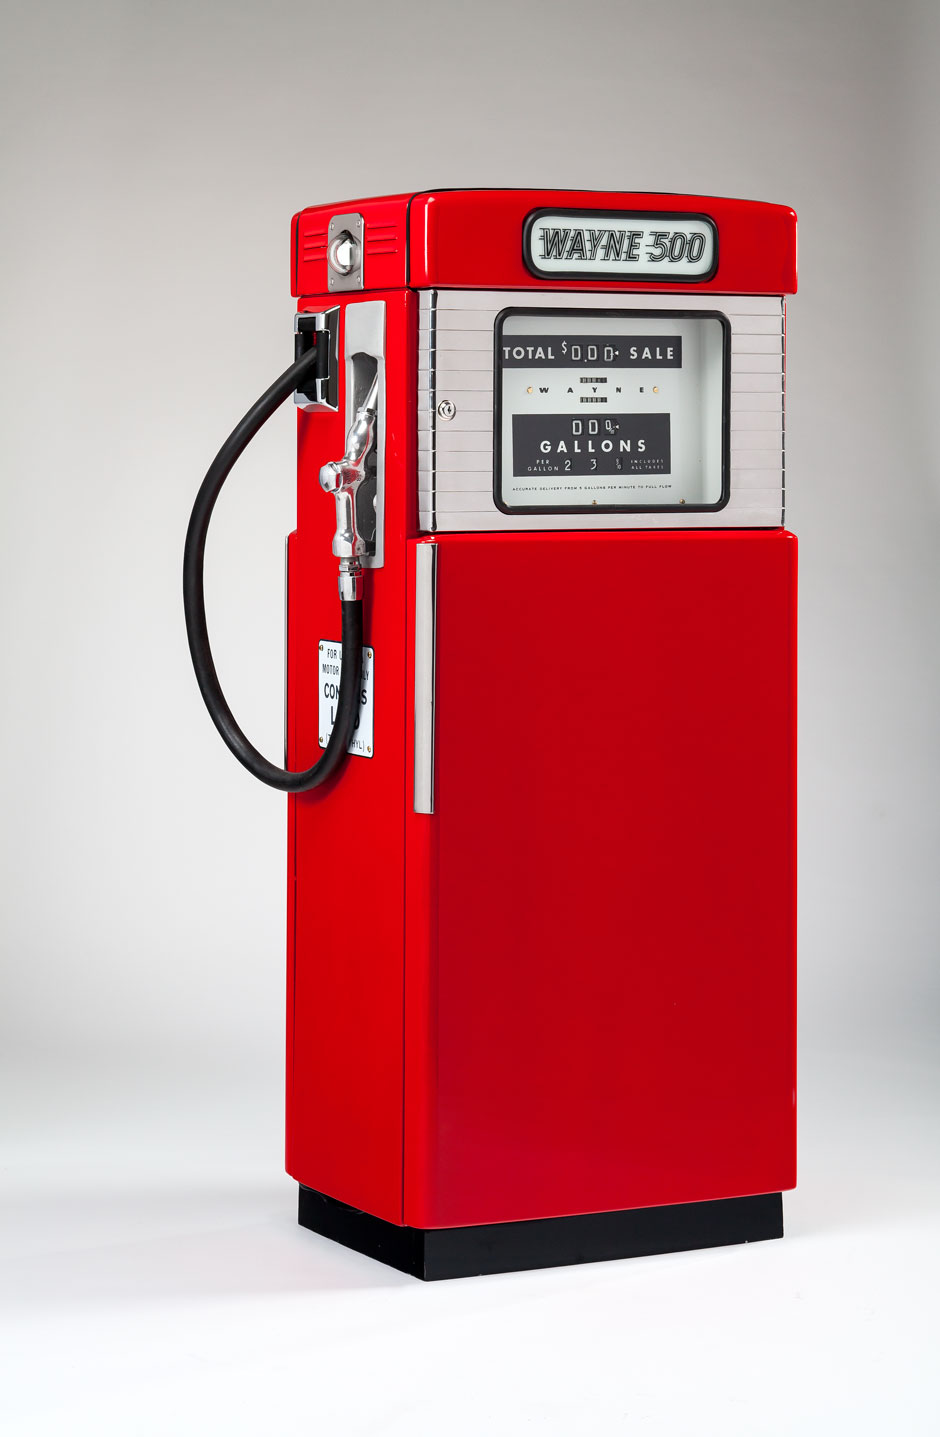 Peter Muller-Munk’s Wayne 500 series gasoline pump, 1950